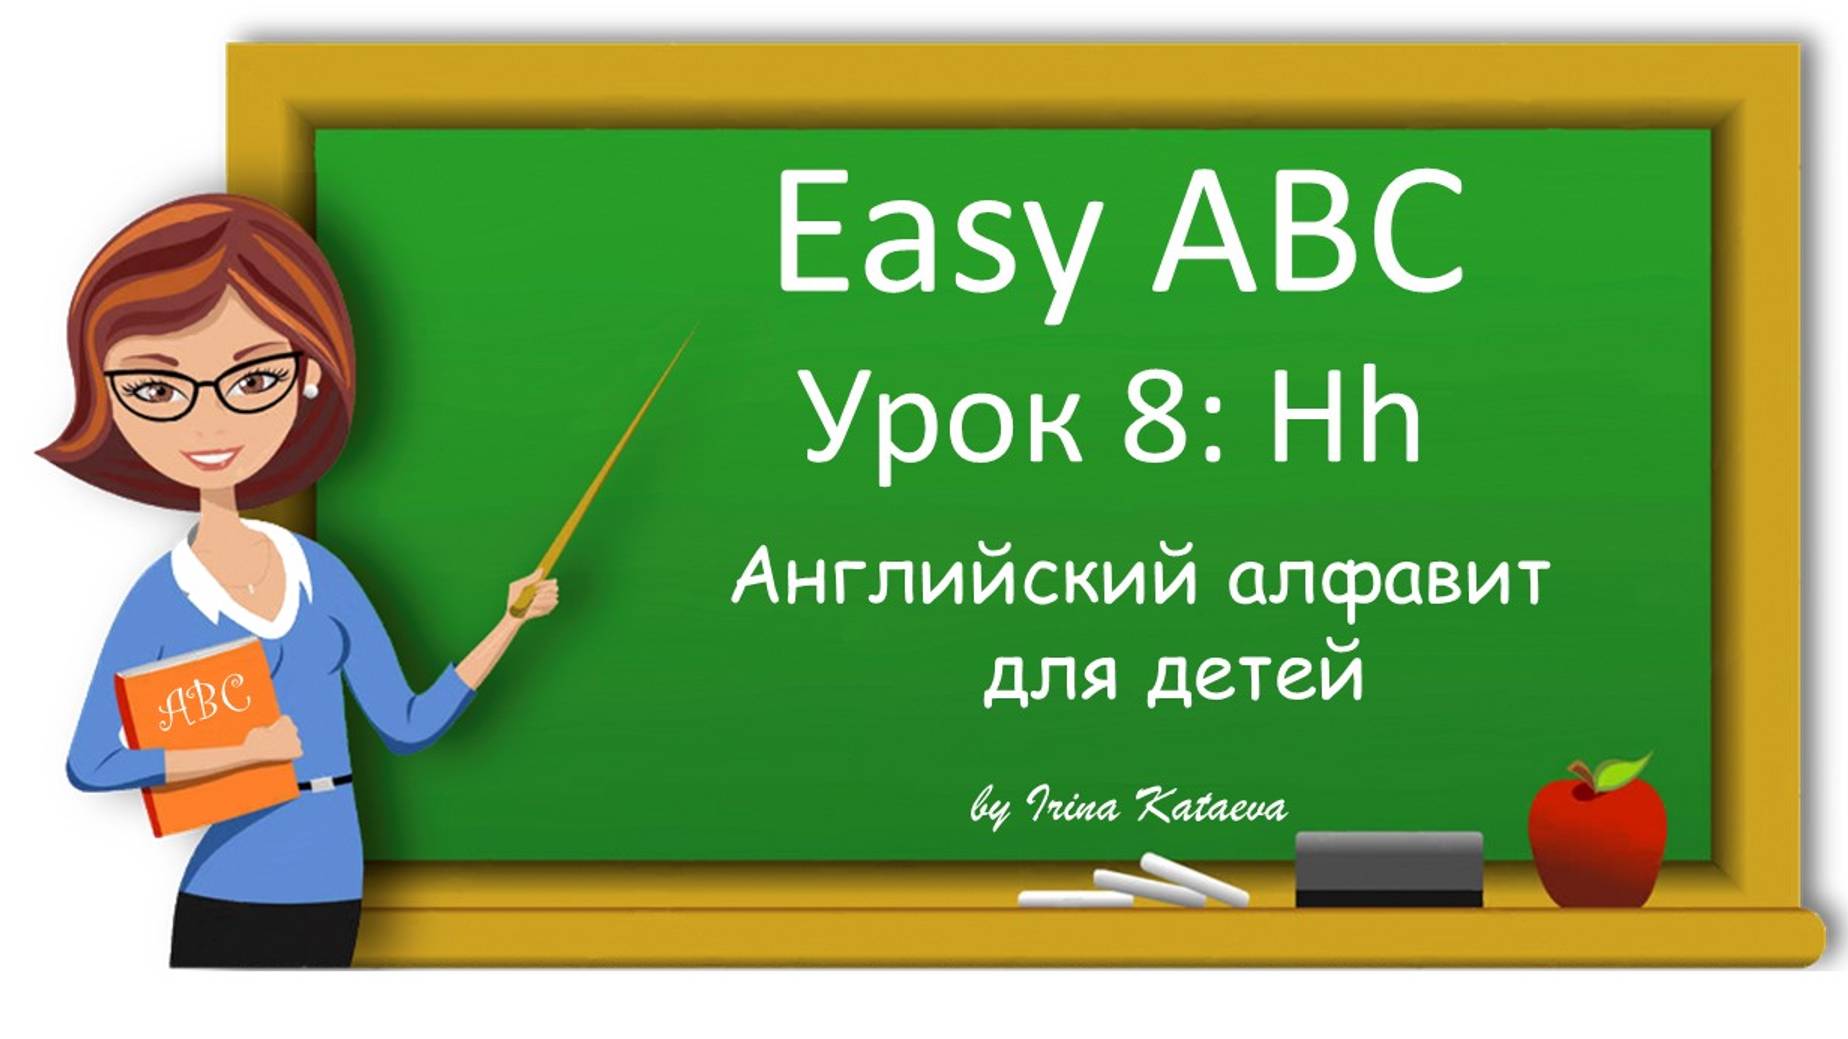 Урок 8. Hh (Easy ABC)